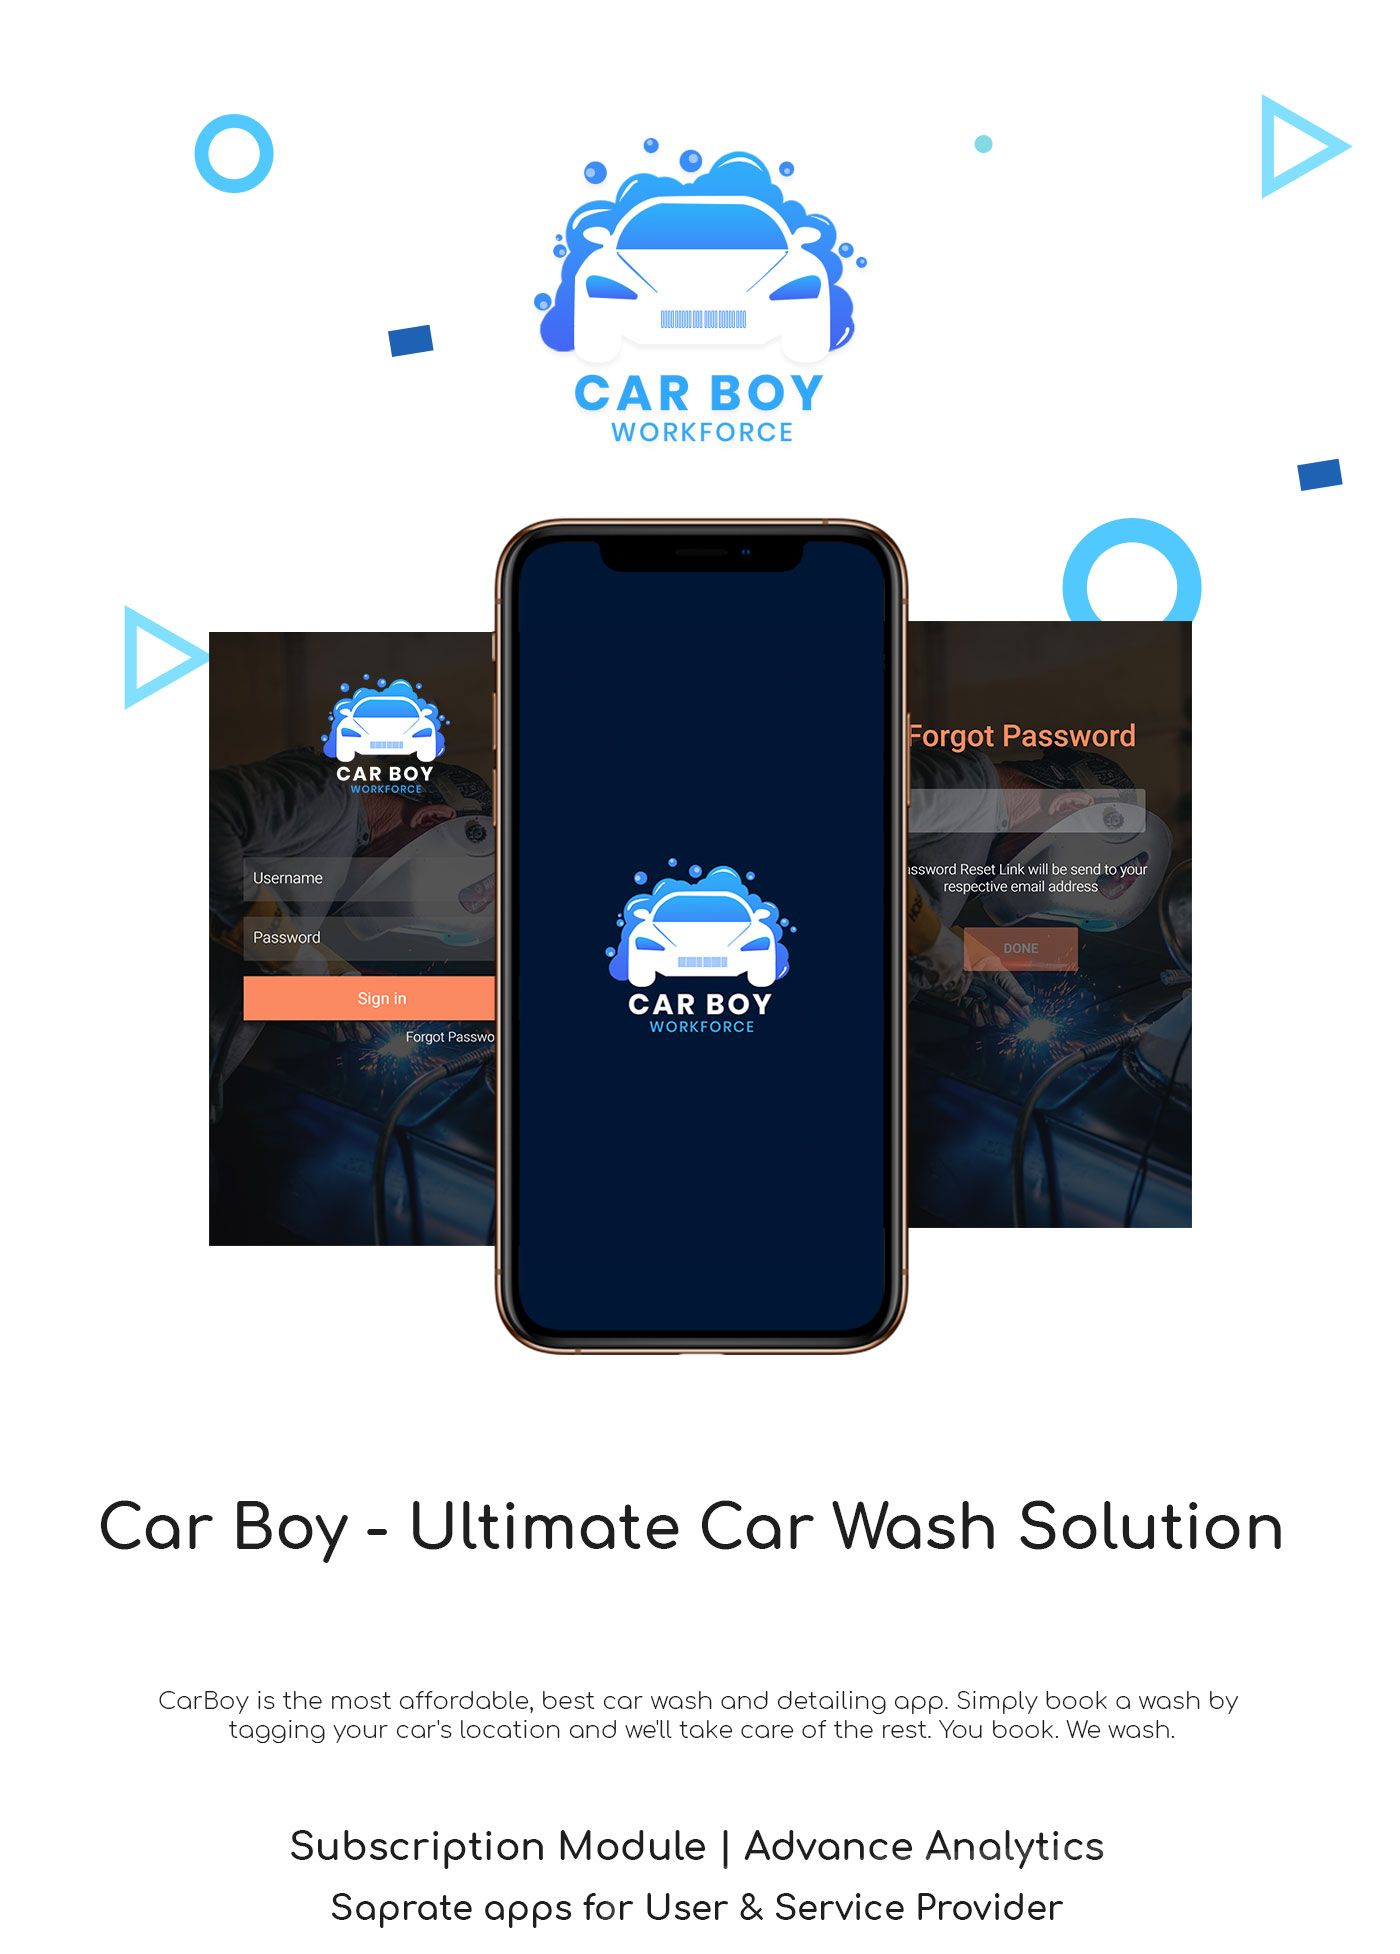 Car-boy-Workforce-icon-01